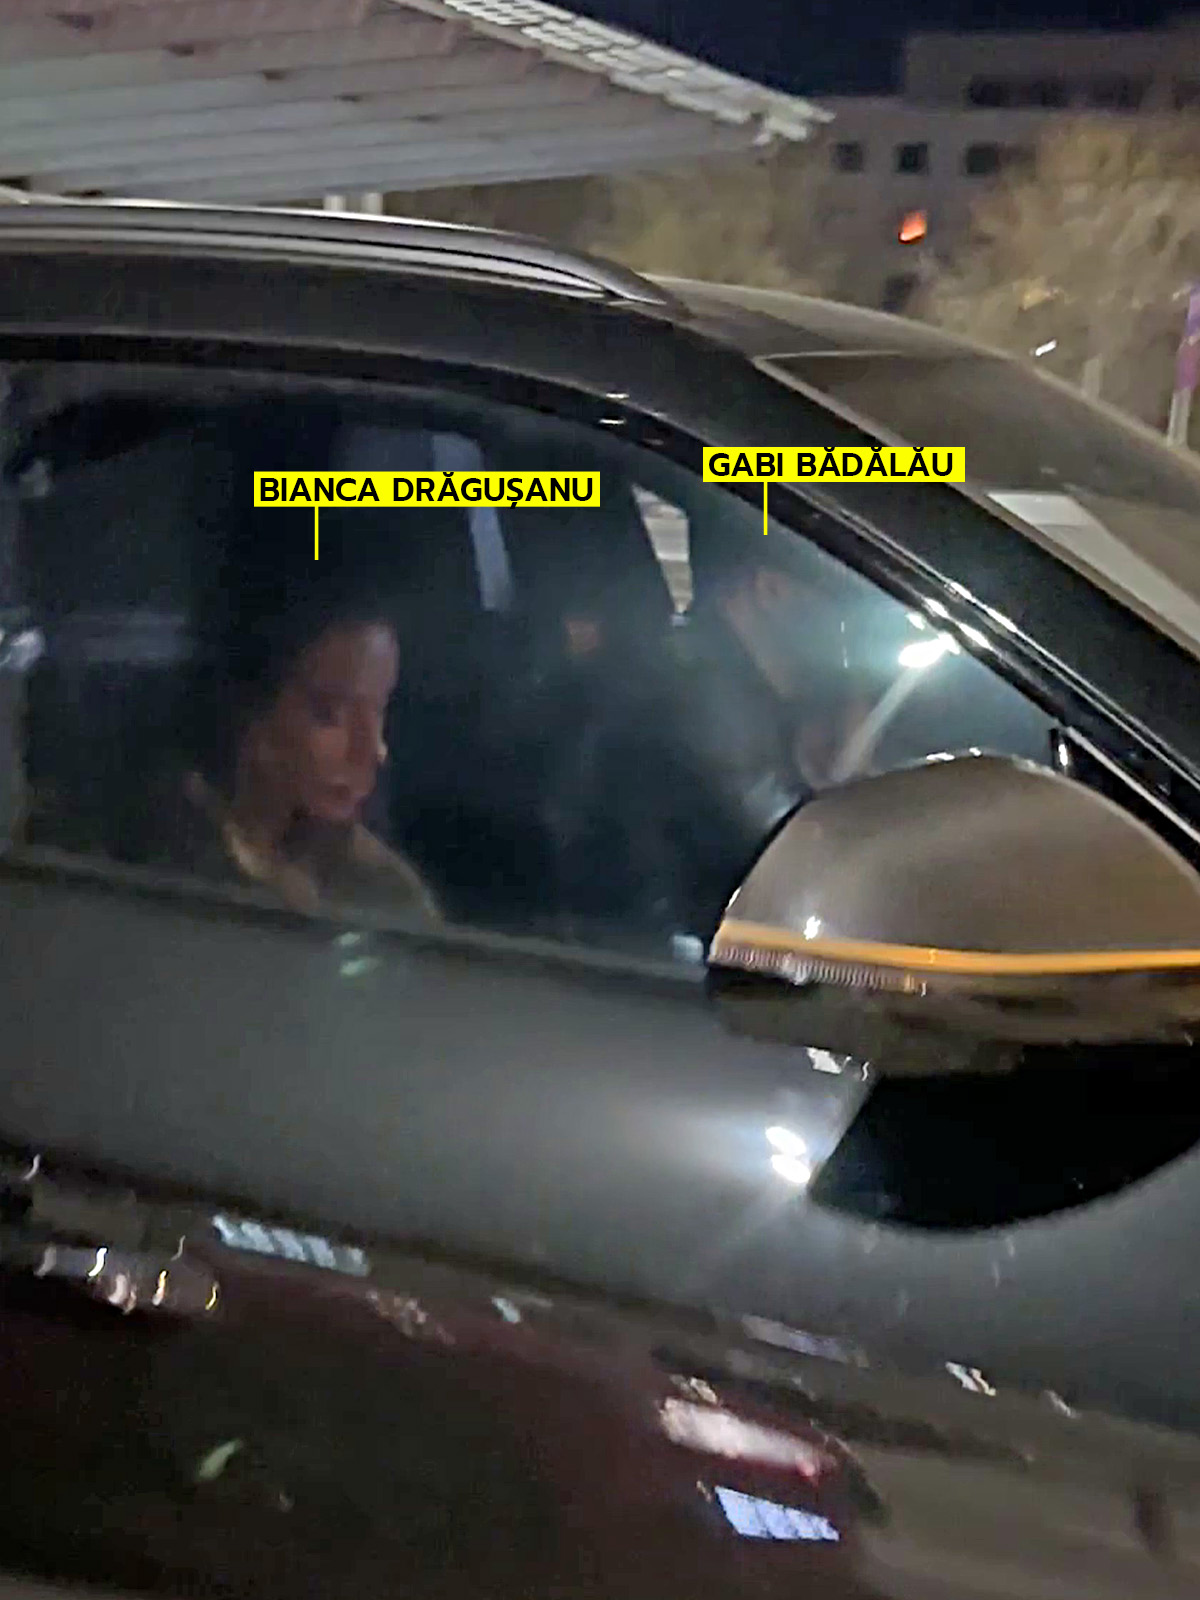 Bianca Drăgușanu și Gabi Bădălău discută în mașină (Foto: CANCAN.RO)